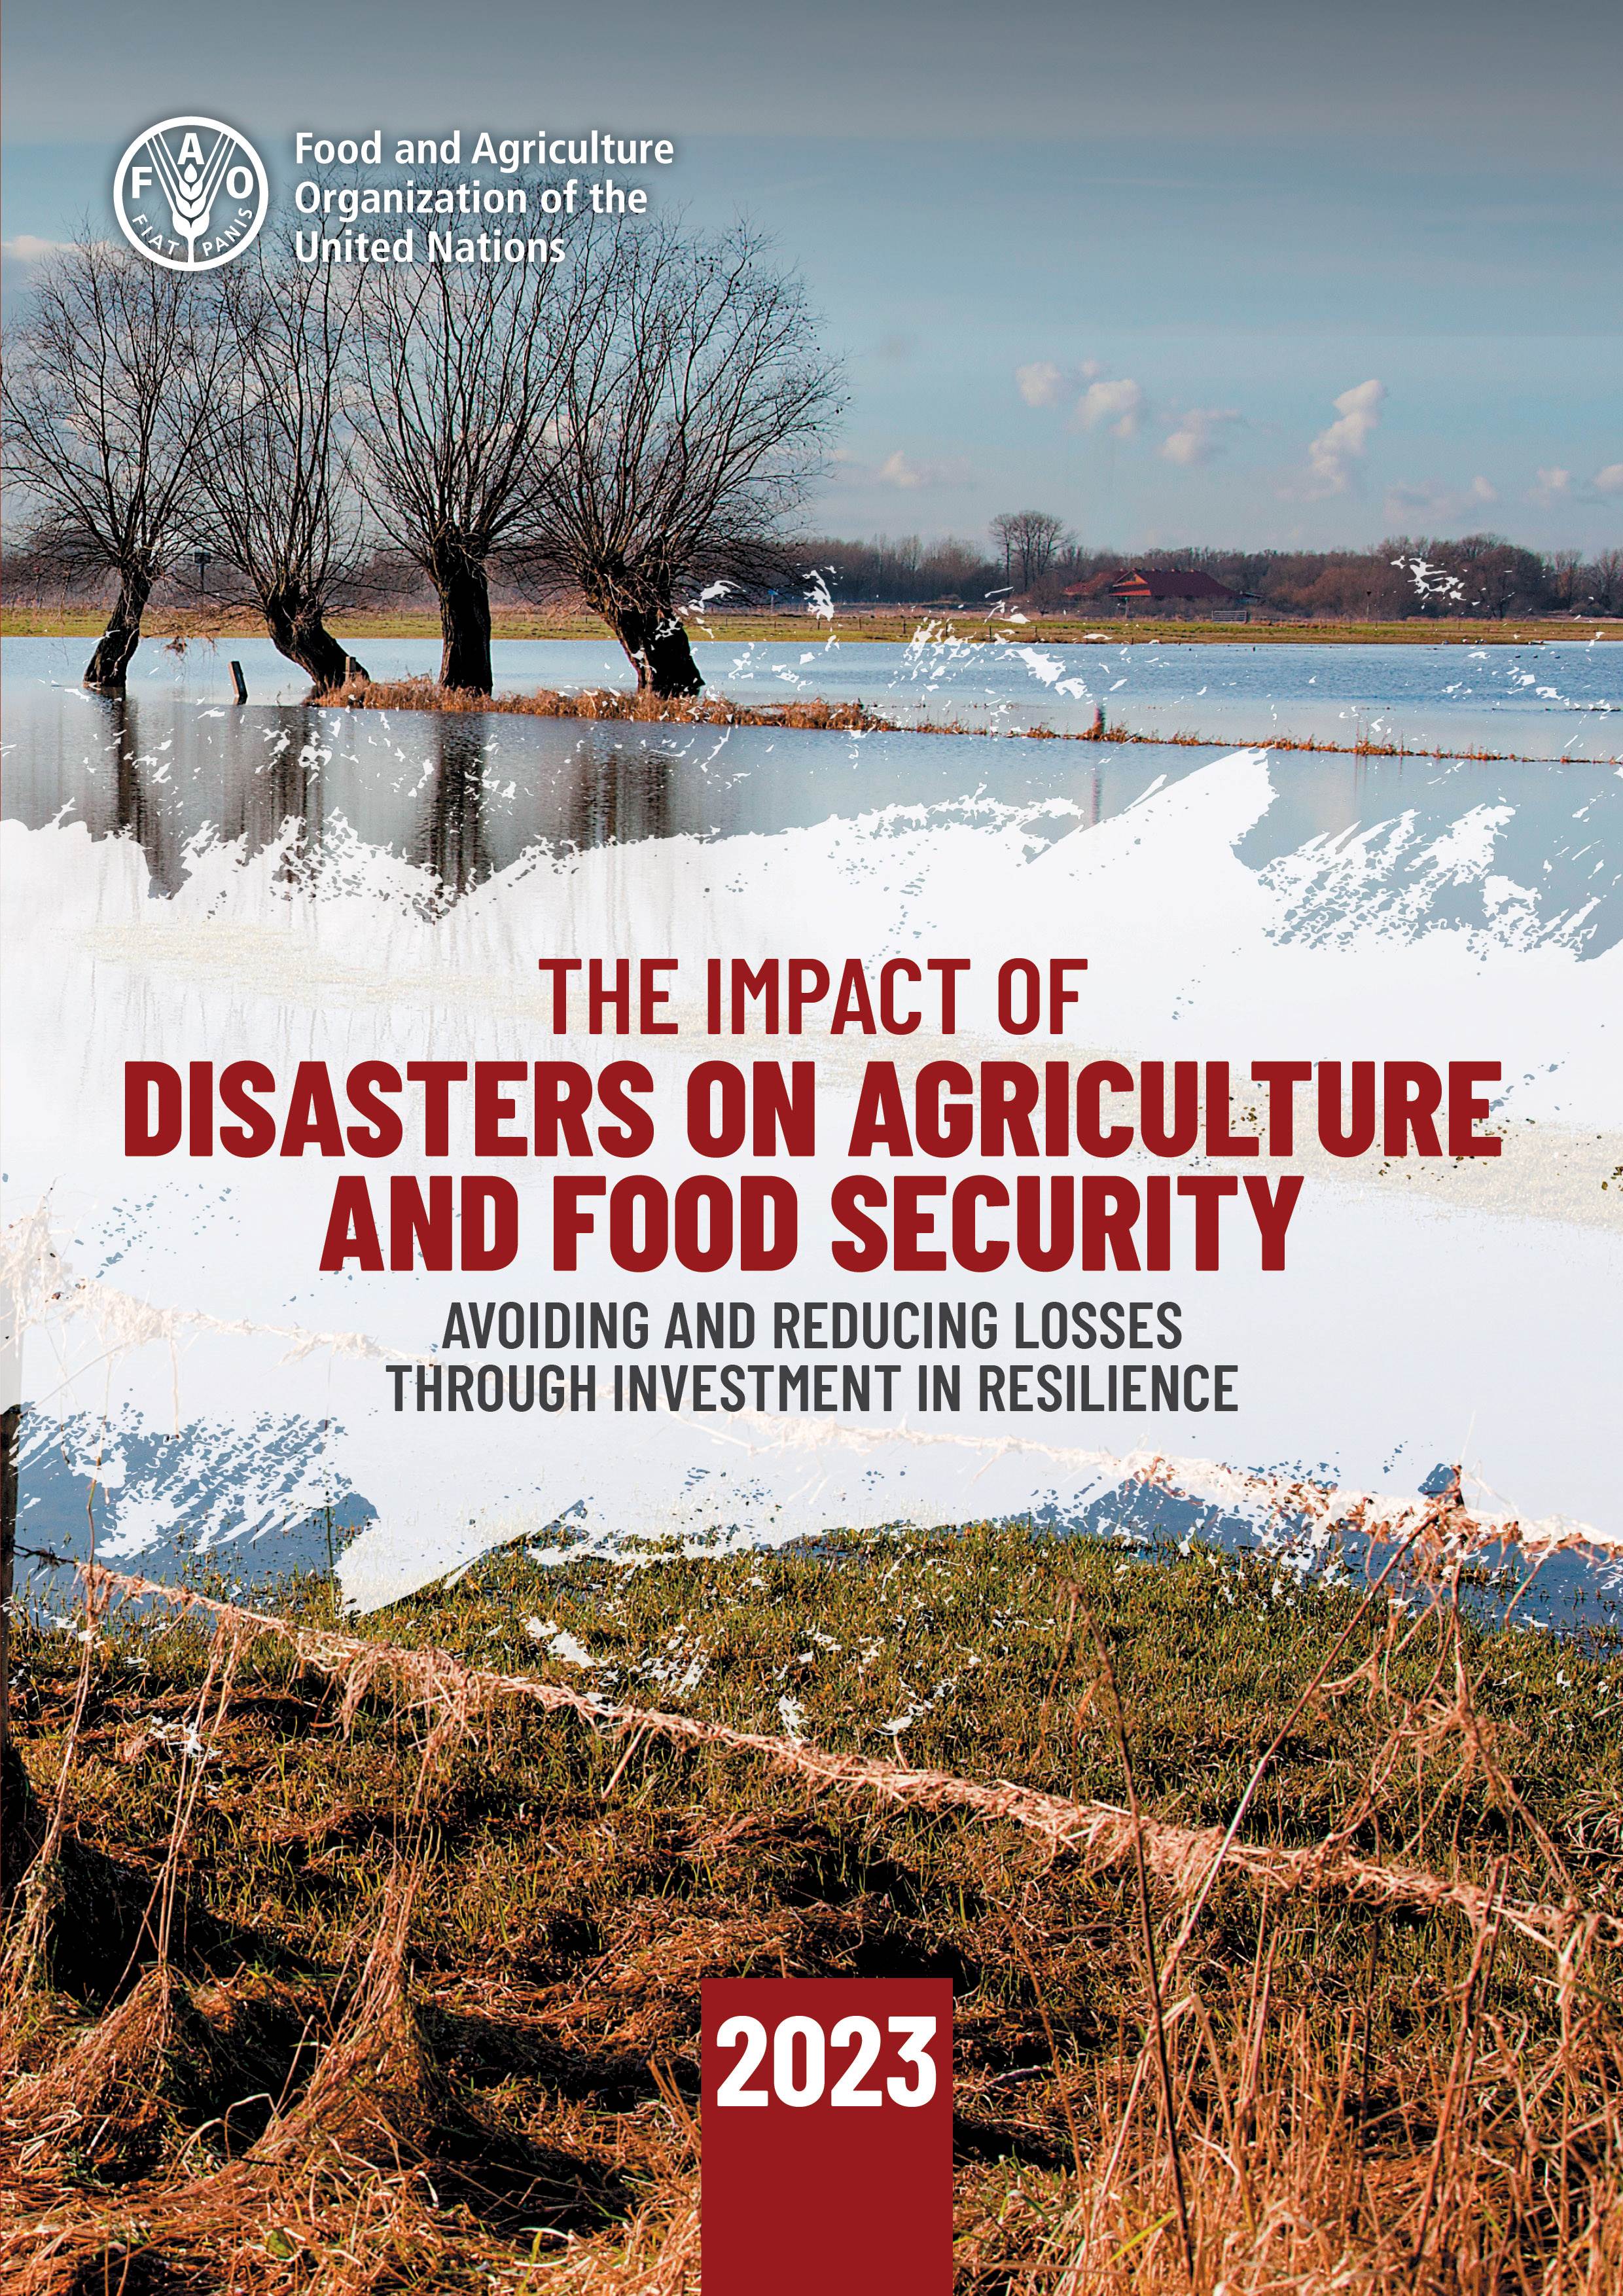 L’impatto dei disastri sull’agricoltura e la sicurezza alimentare